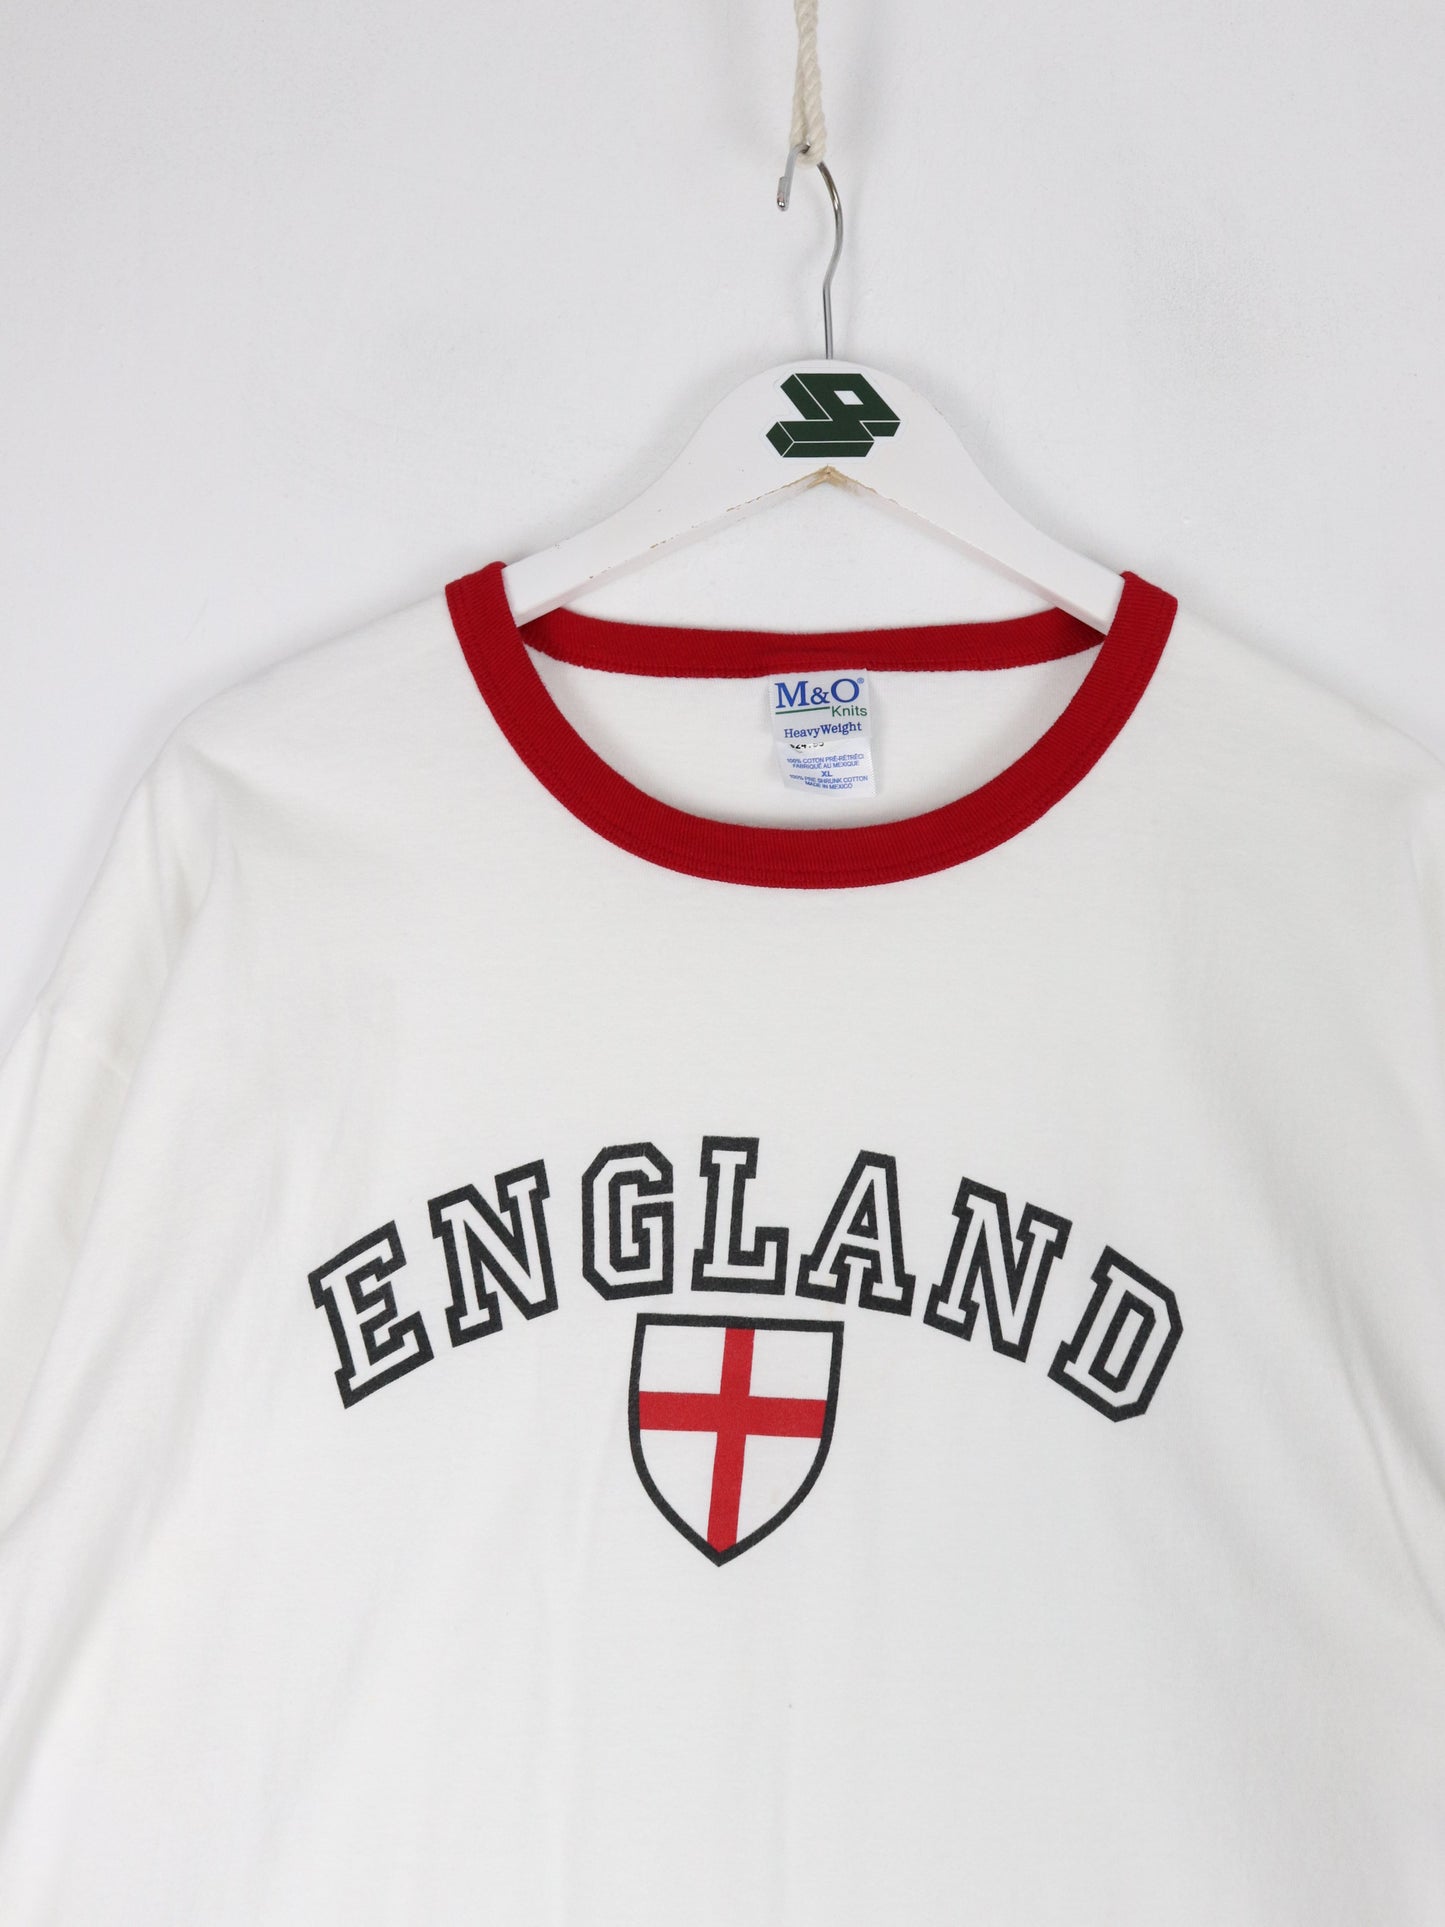 England T Shirt Mens XL White Ringer